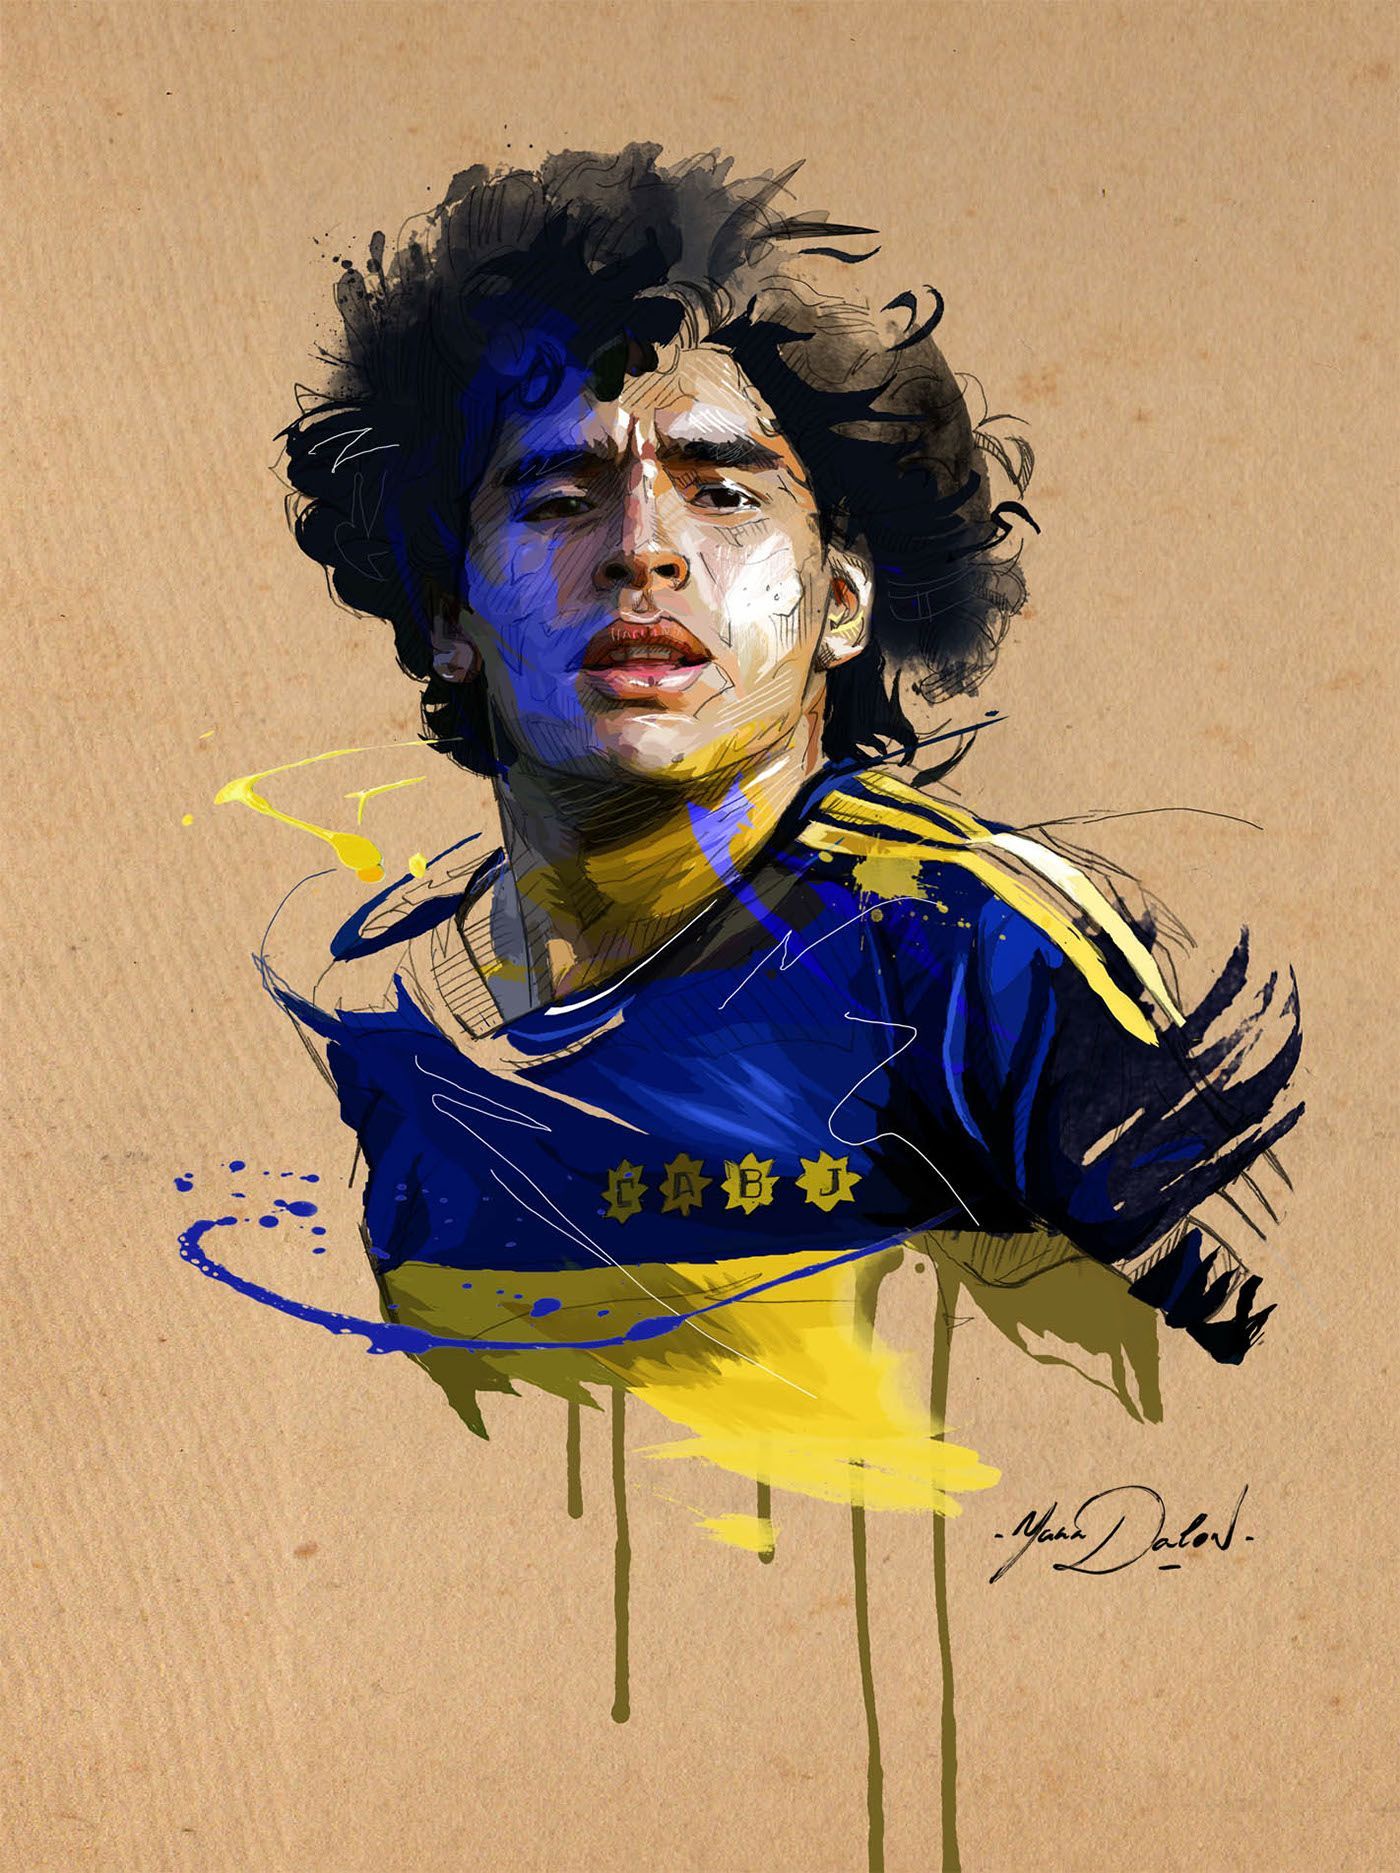 Diego Maradona Art Wallpapers  Wallpaper Cave